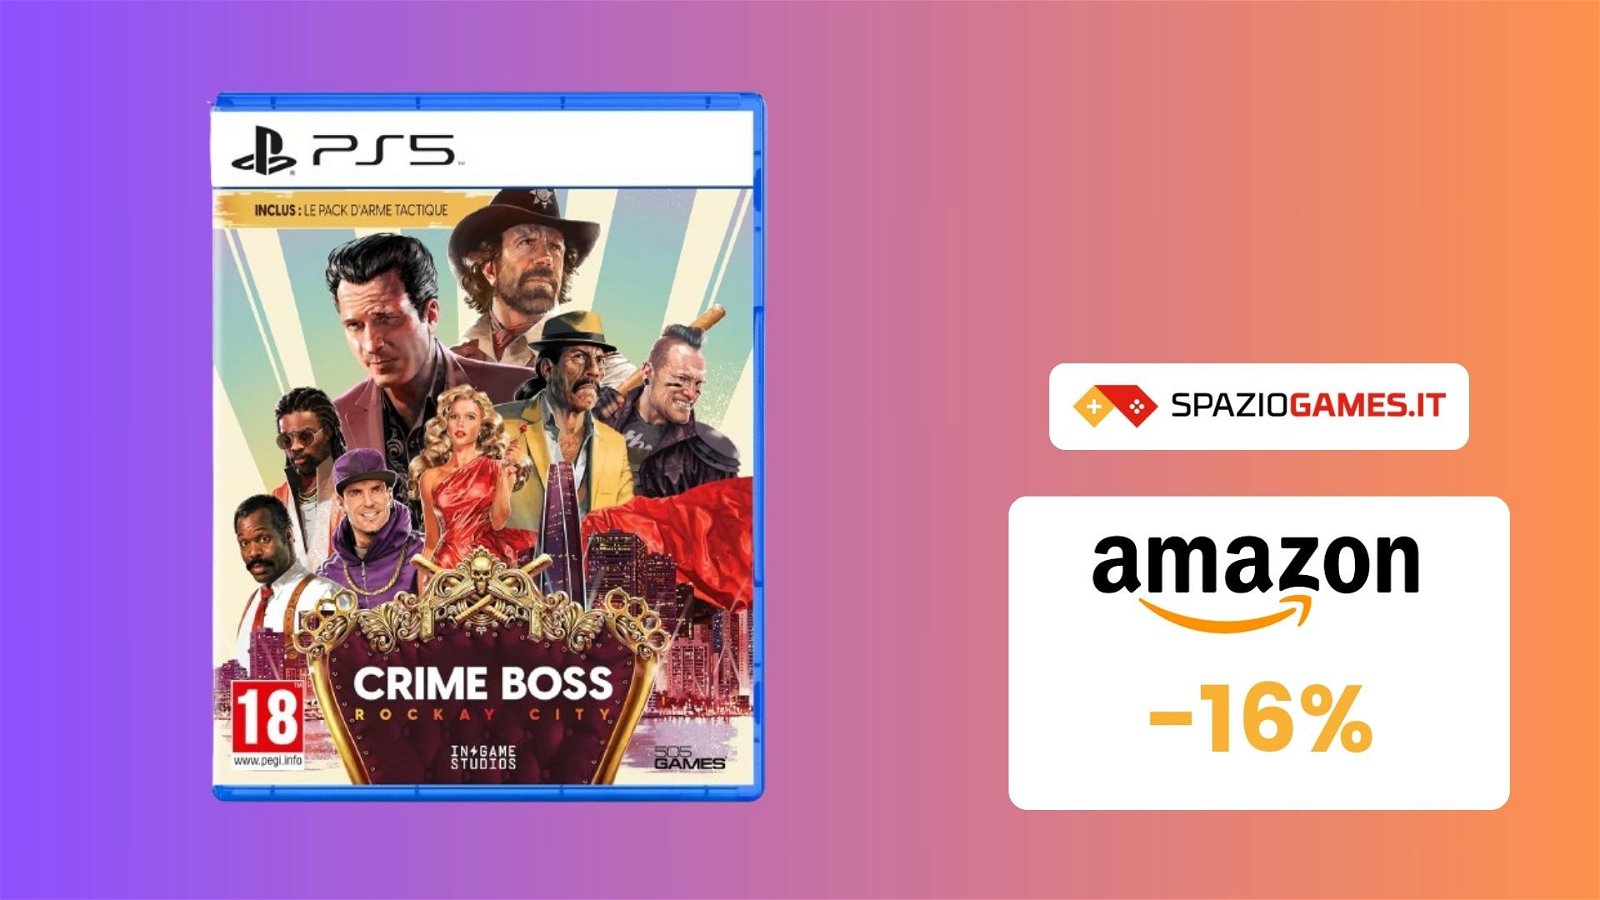 OFFERTA A TEMPO: Crime Boss Rockay City per PS5 oggi al MINIMO STORICO! -16%